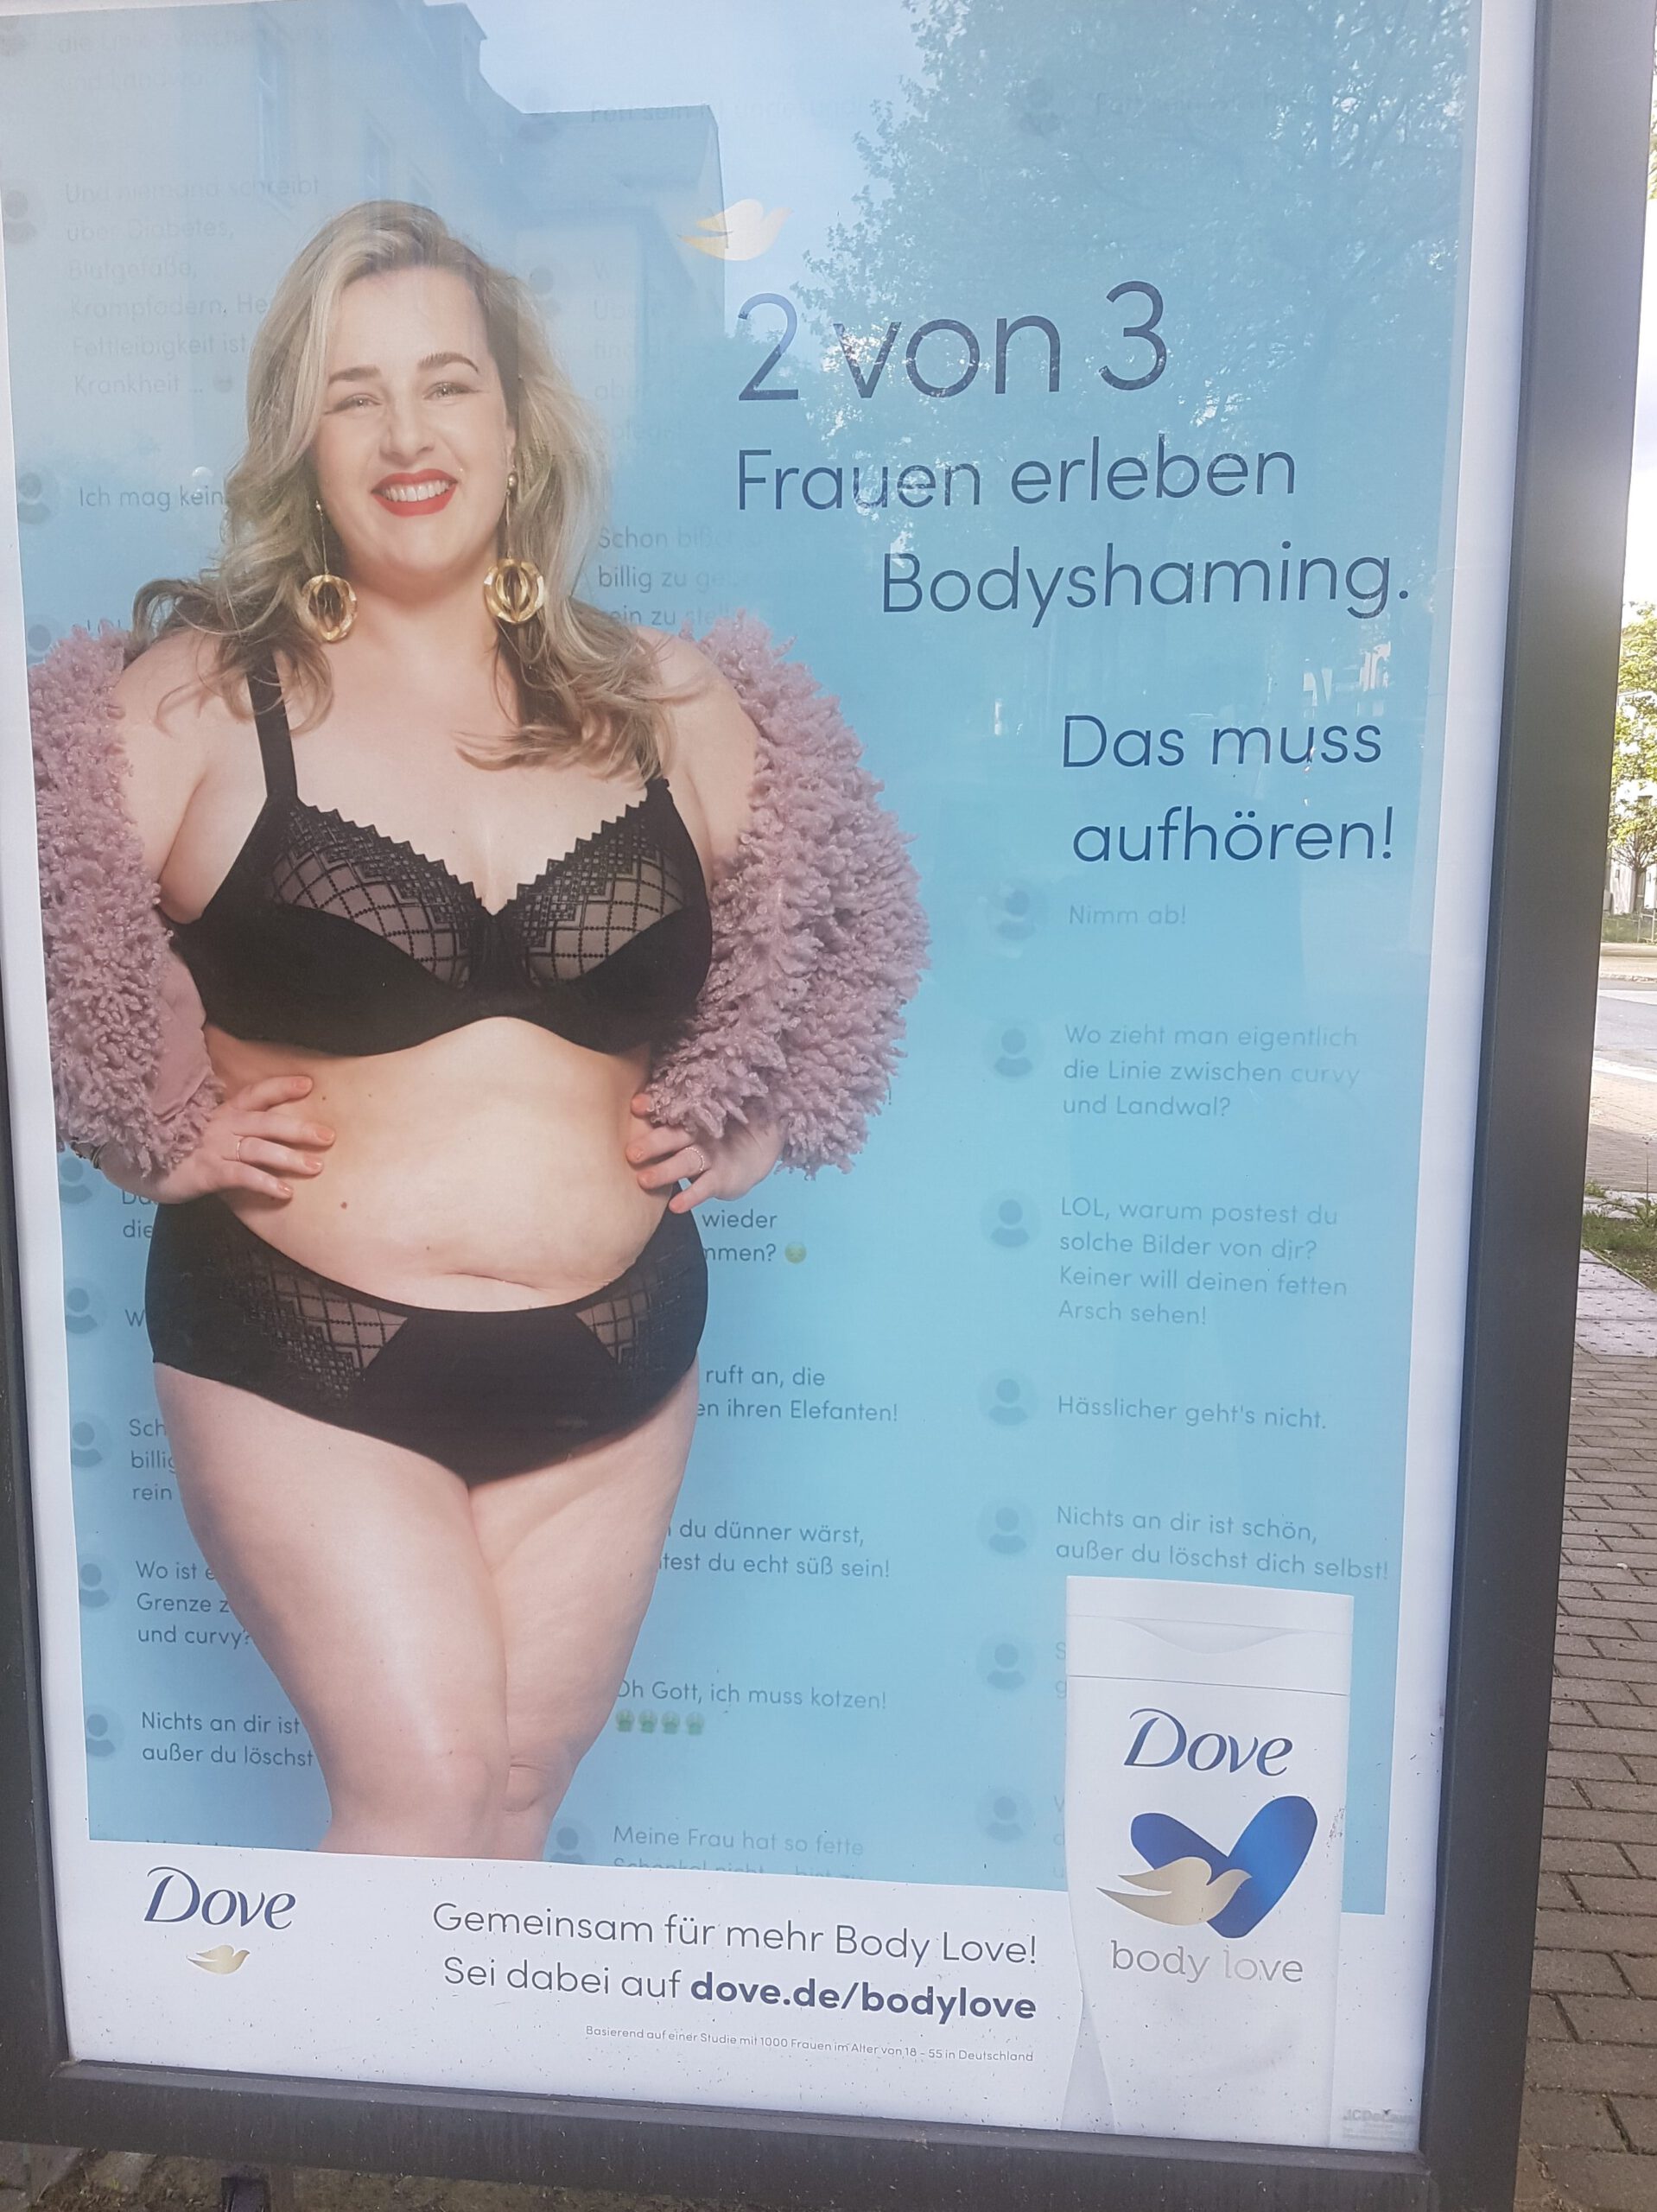 Werbeplakat von Dove mit dem Titel "2 von 3 Frauen erleben Bodyshaming" und eine hell häutigen, blonden Frau.